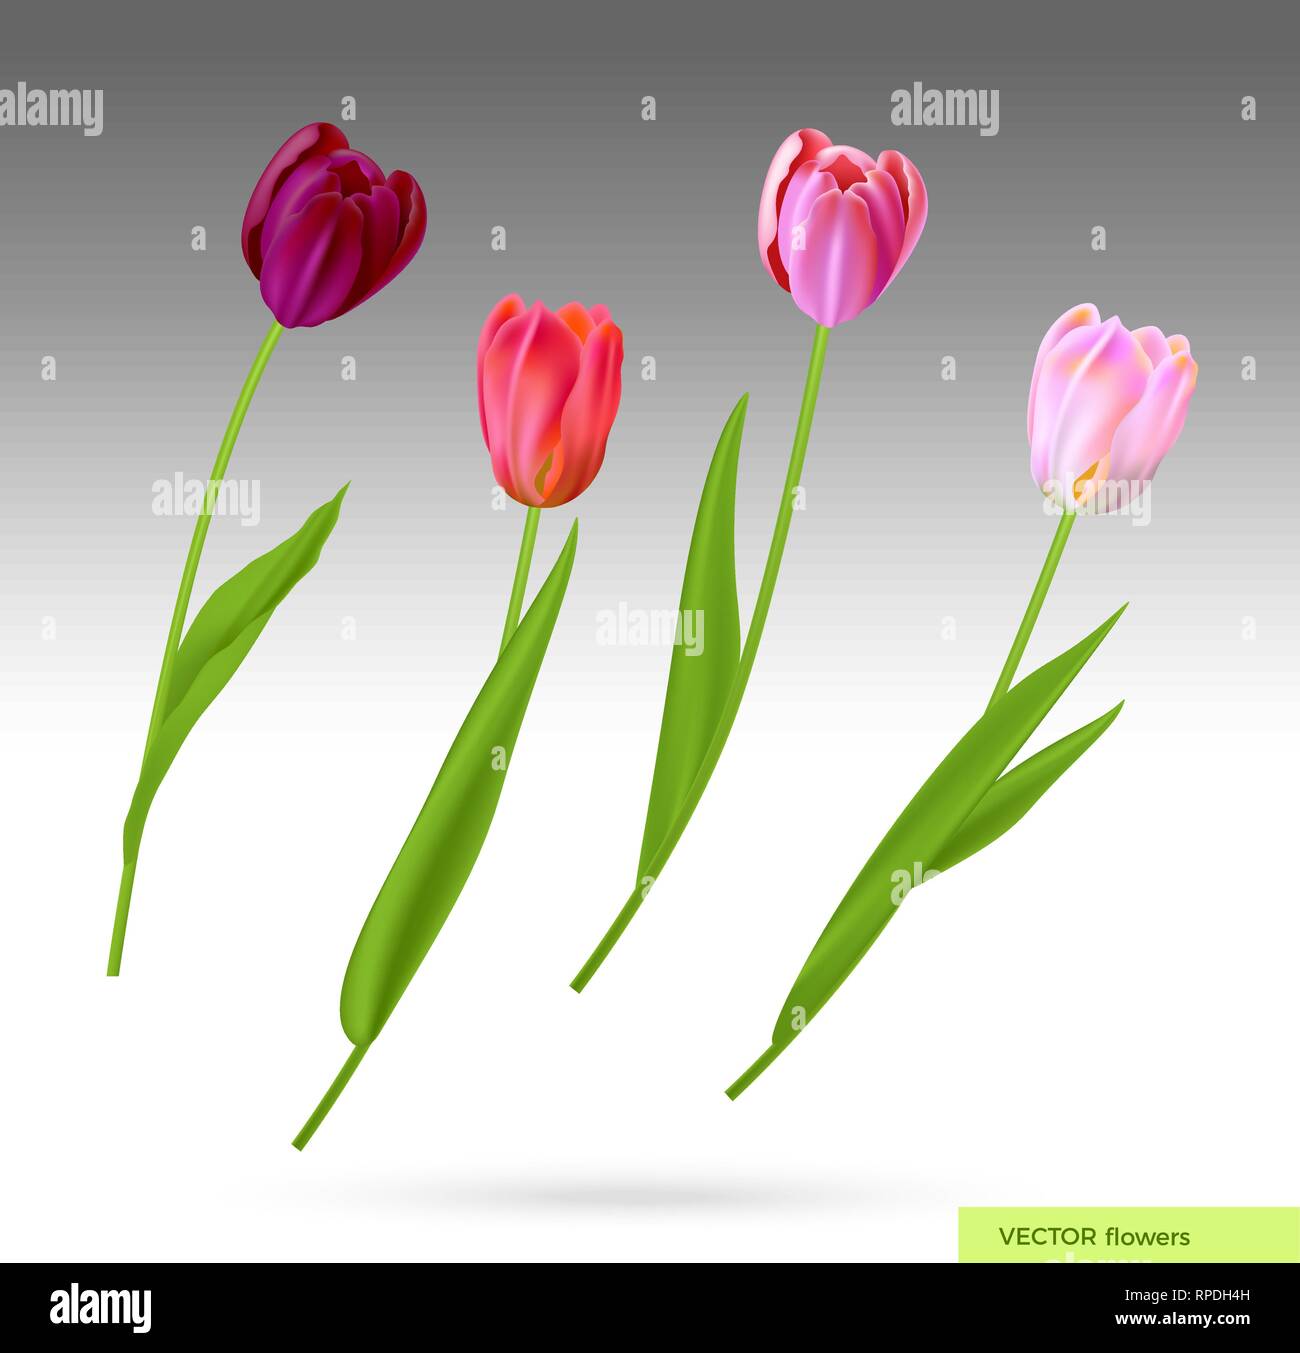 Realistische Vektor bunte Tulpen. Frühling Blumen Hintergrund. Blumenstrauß aus Tulpen isoliert. Stock Vektor